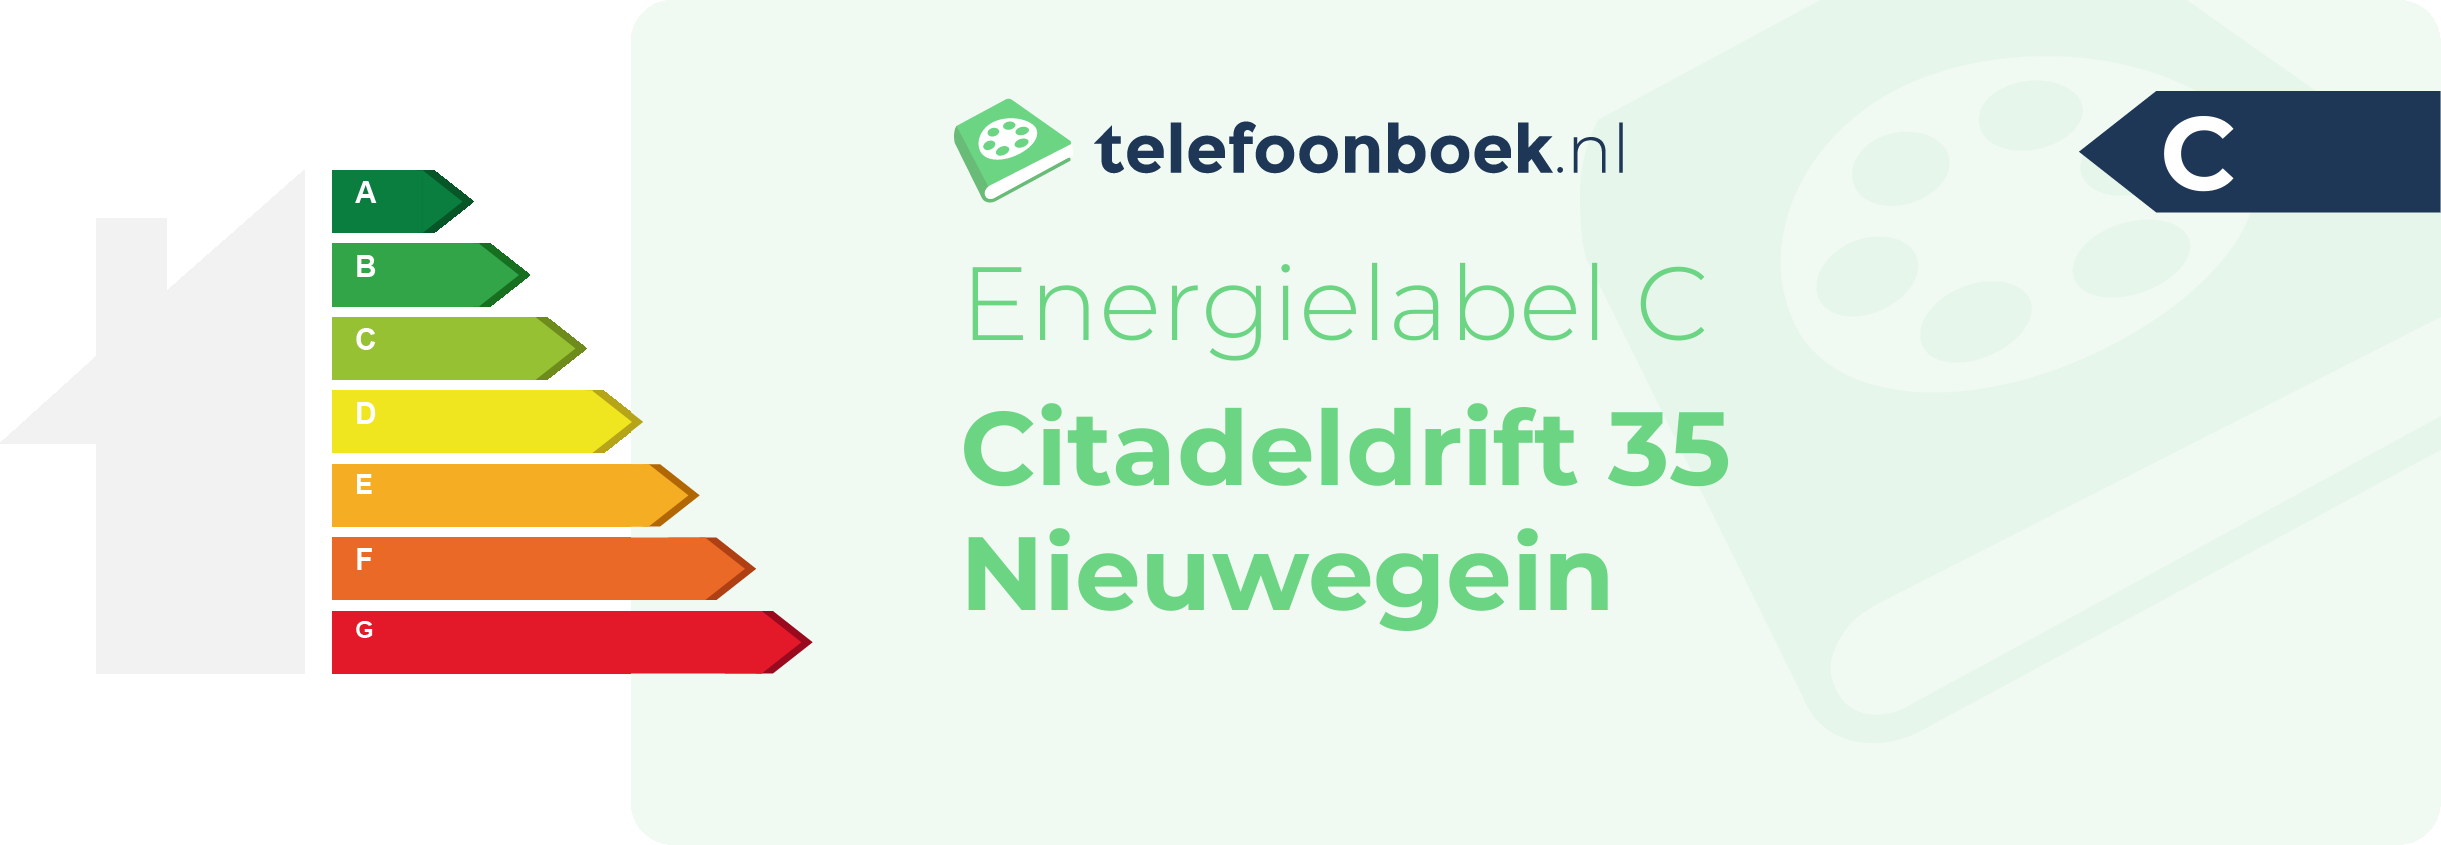 Energielabel Citadeldrift 35 Nieuwegein